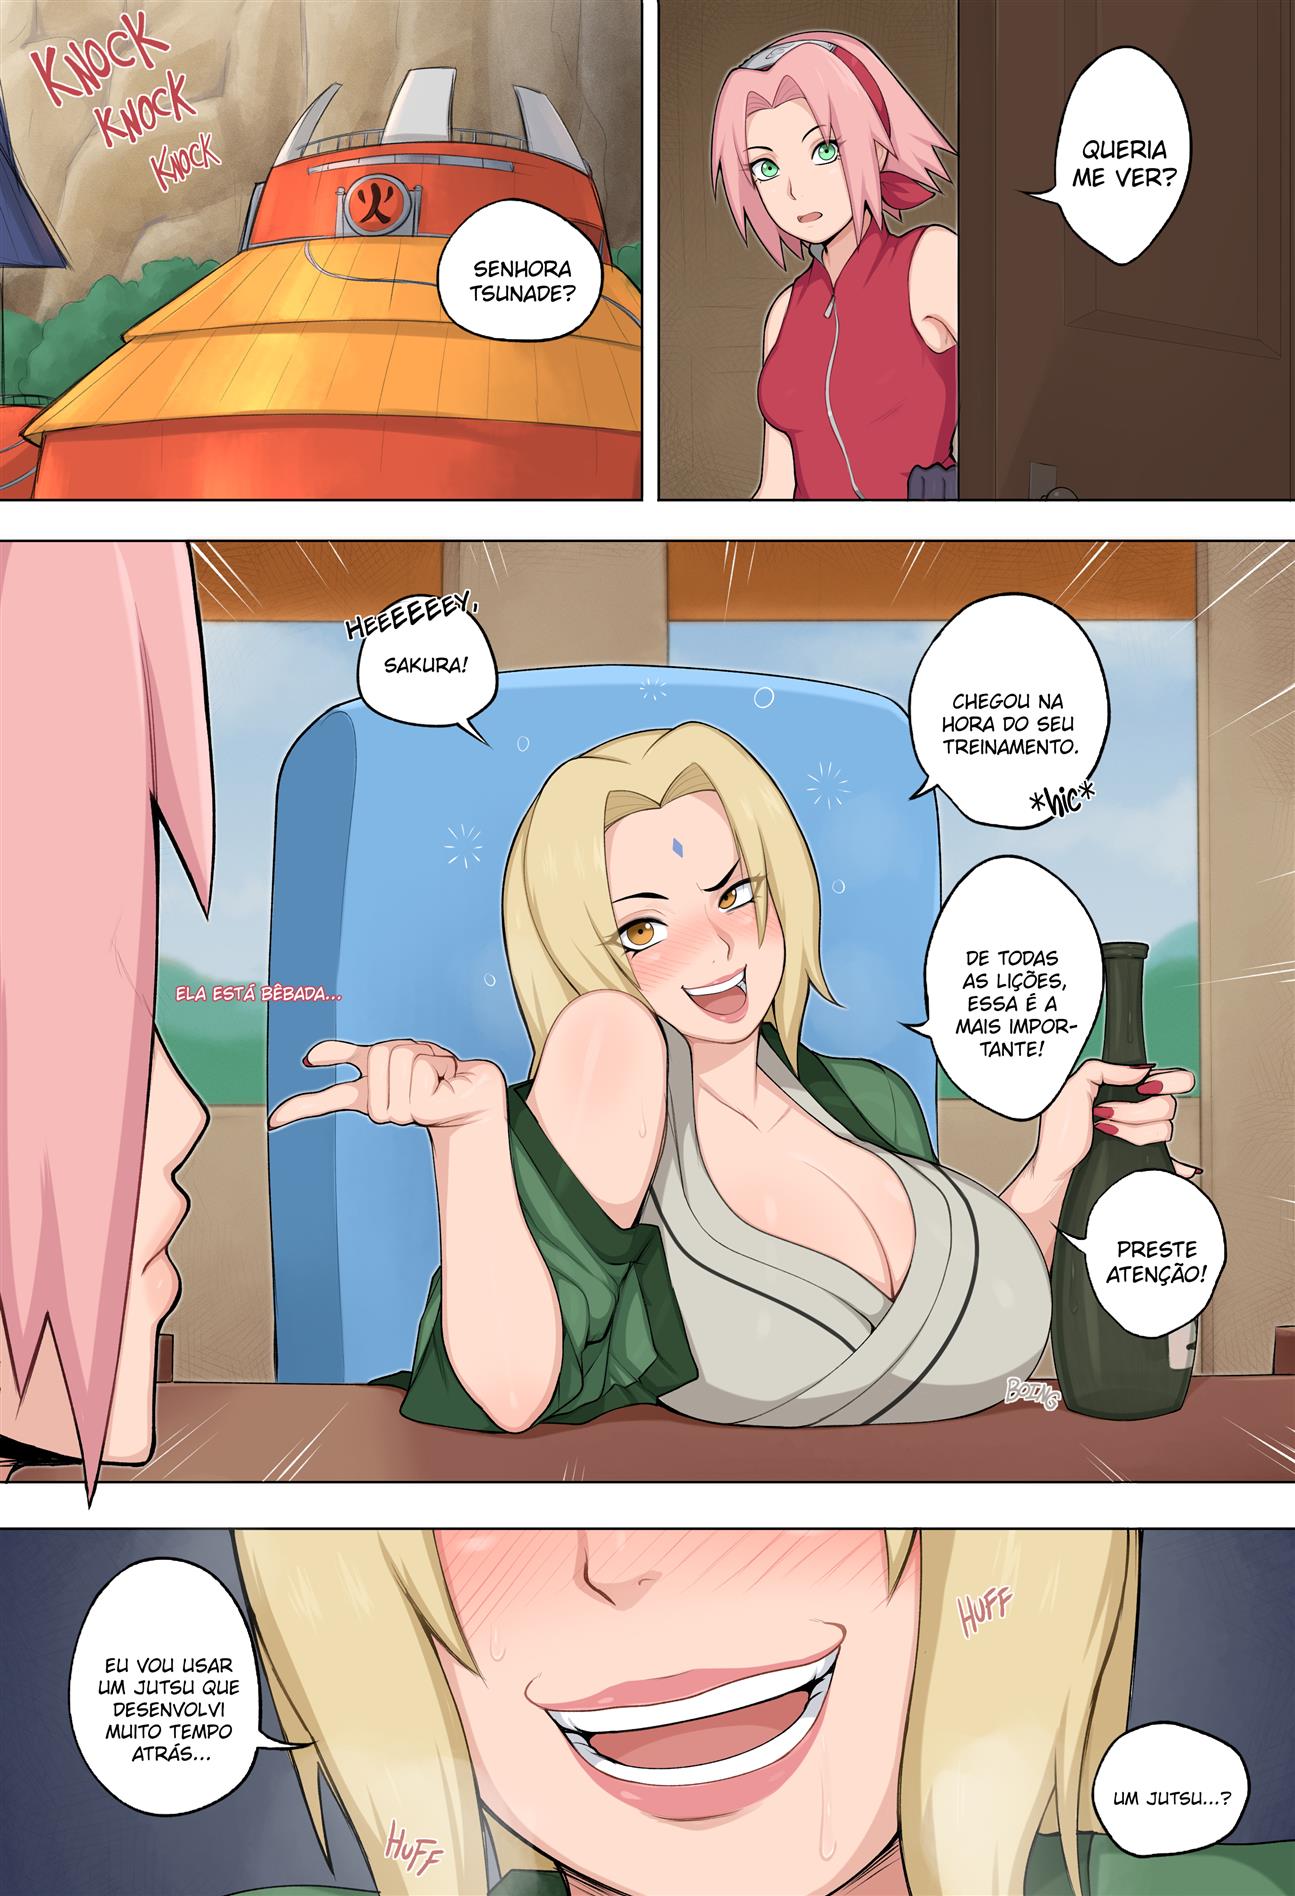 Tsunade ensina uma lição a Sakura